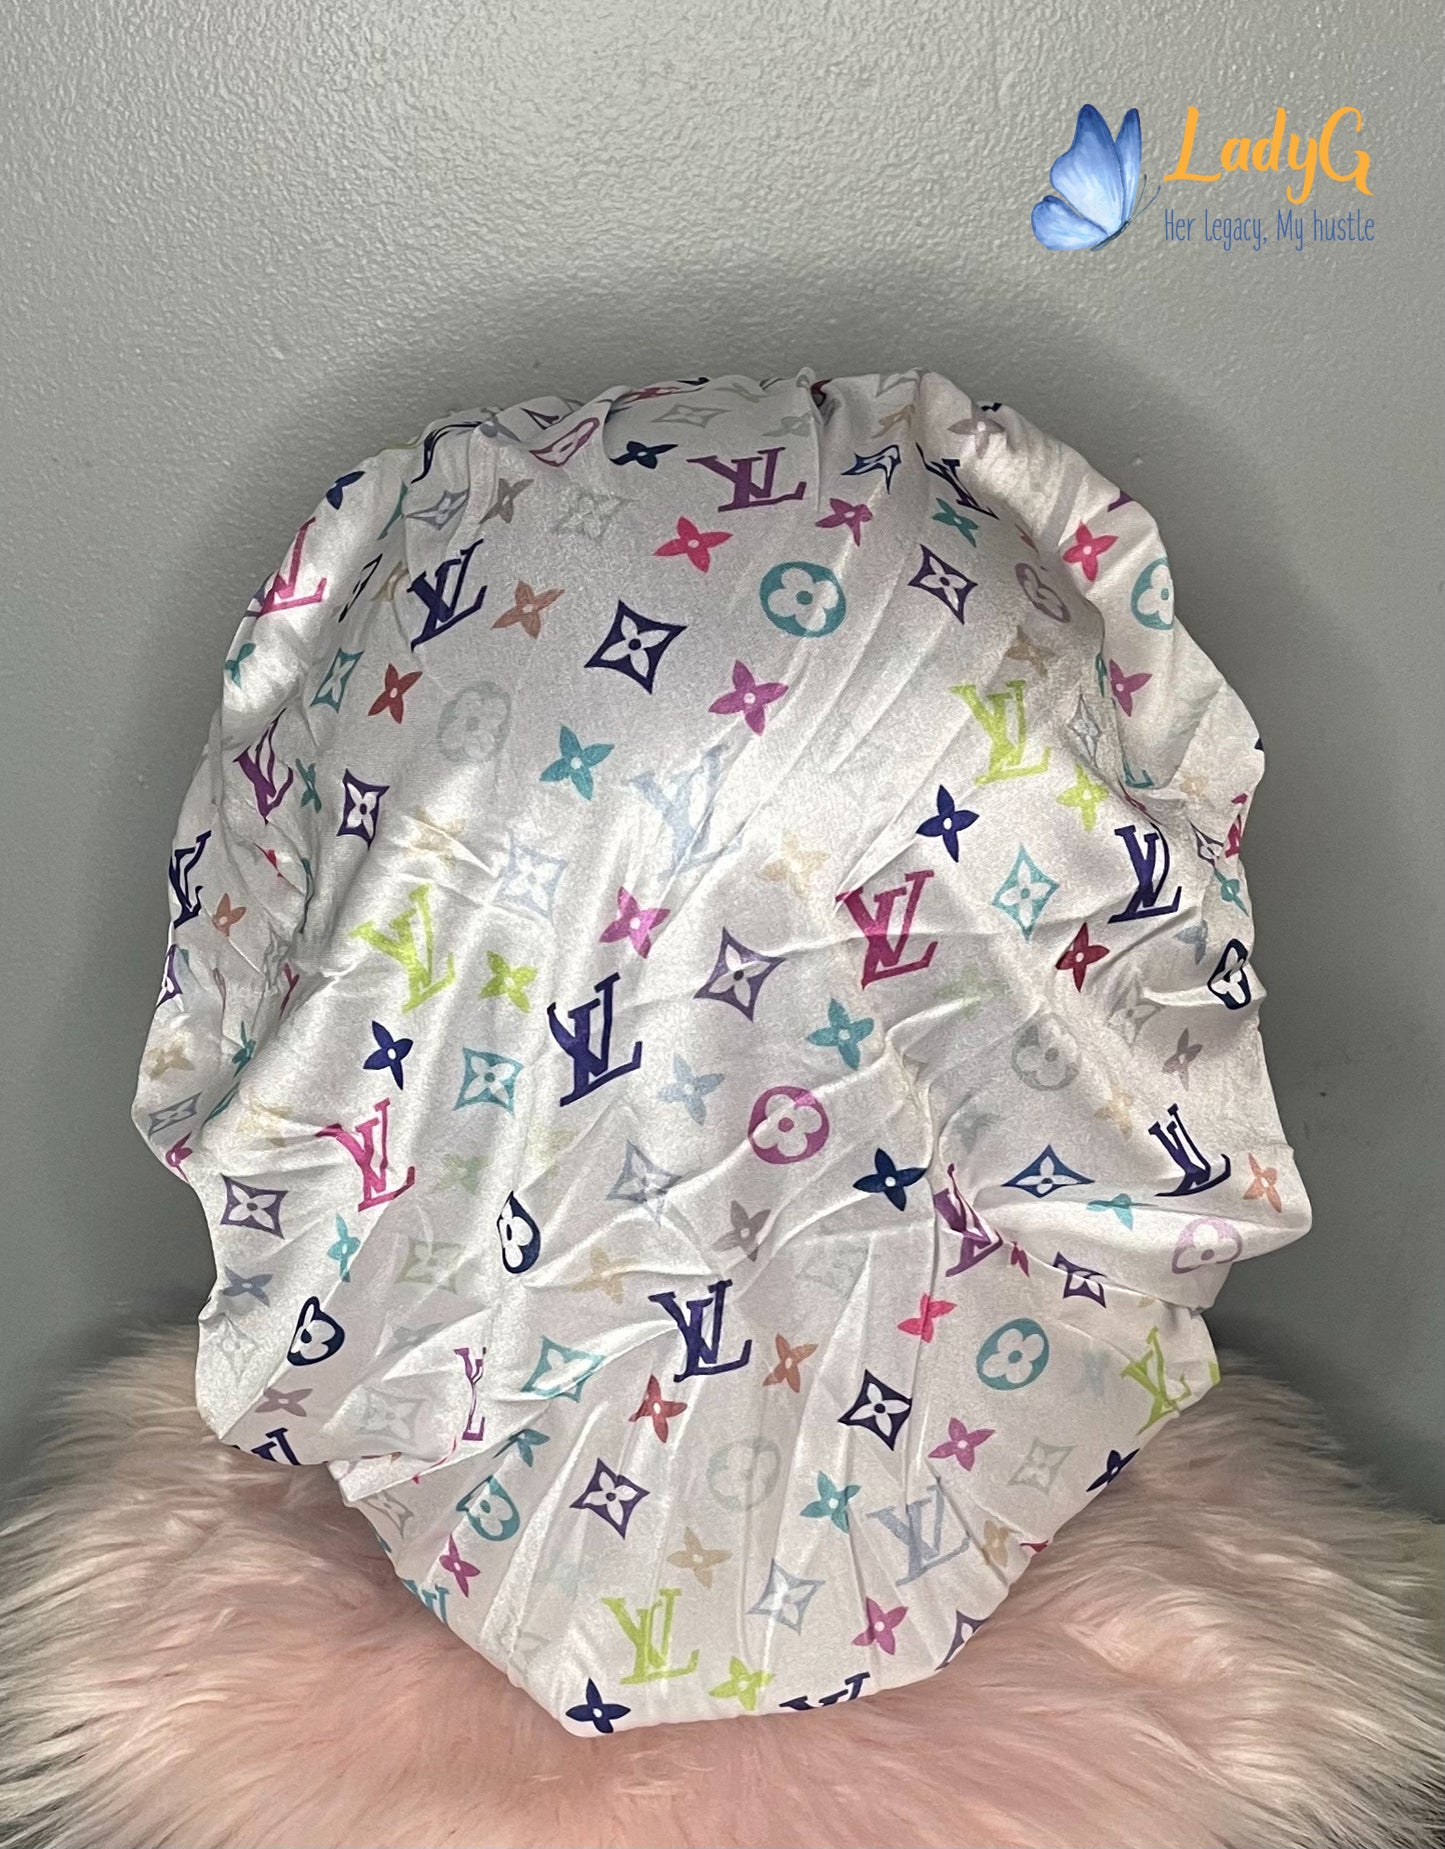 DeeJay's HeadWear - Louis Vuitton Bonnet (Multi-Color) $10